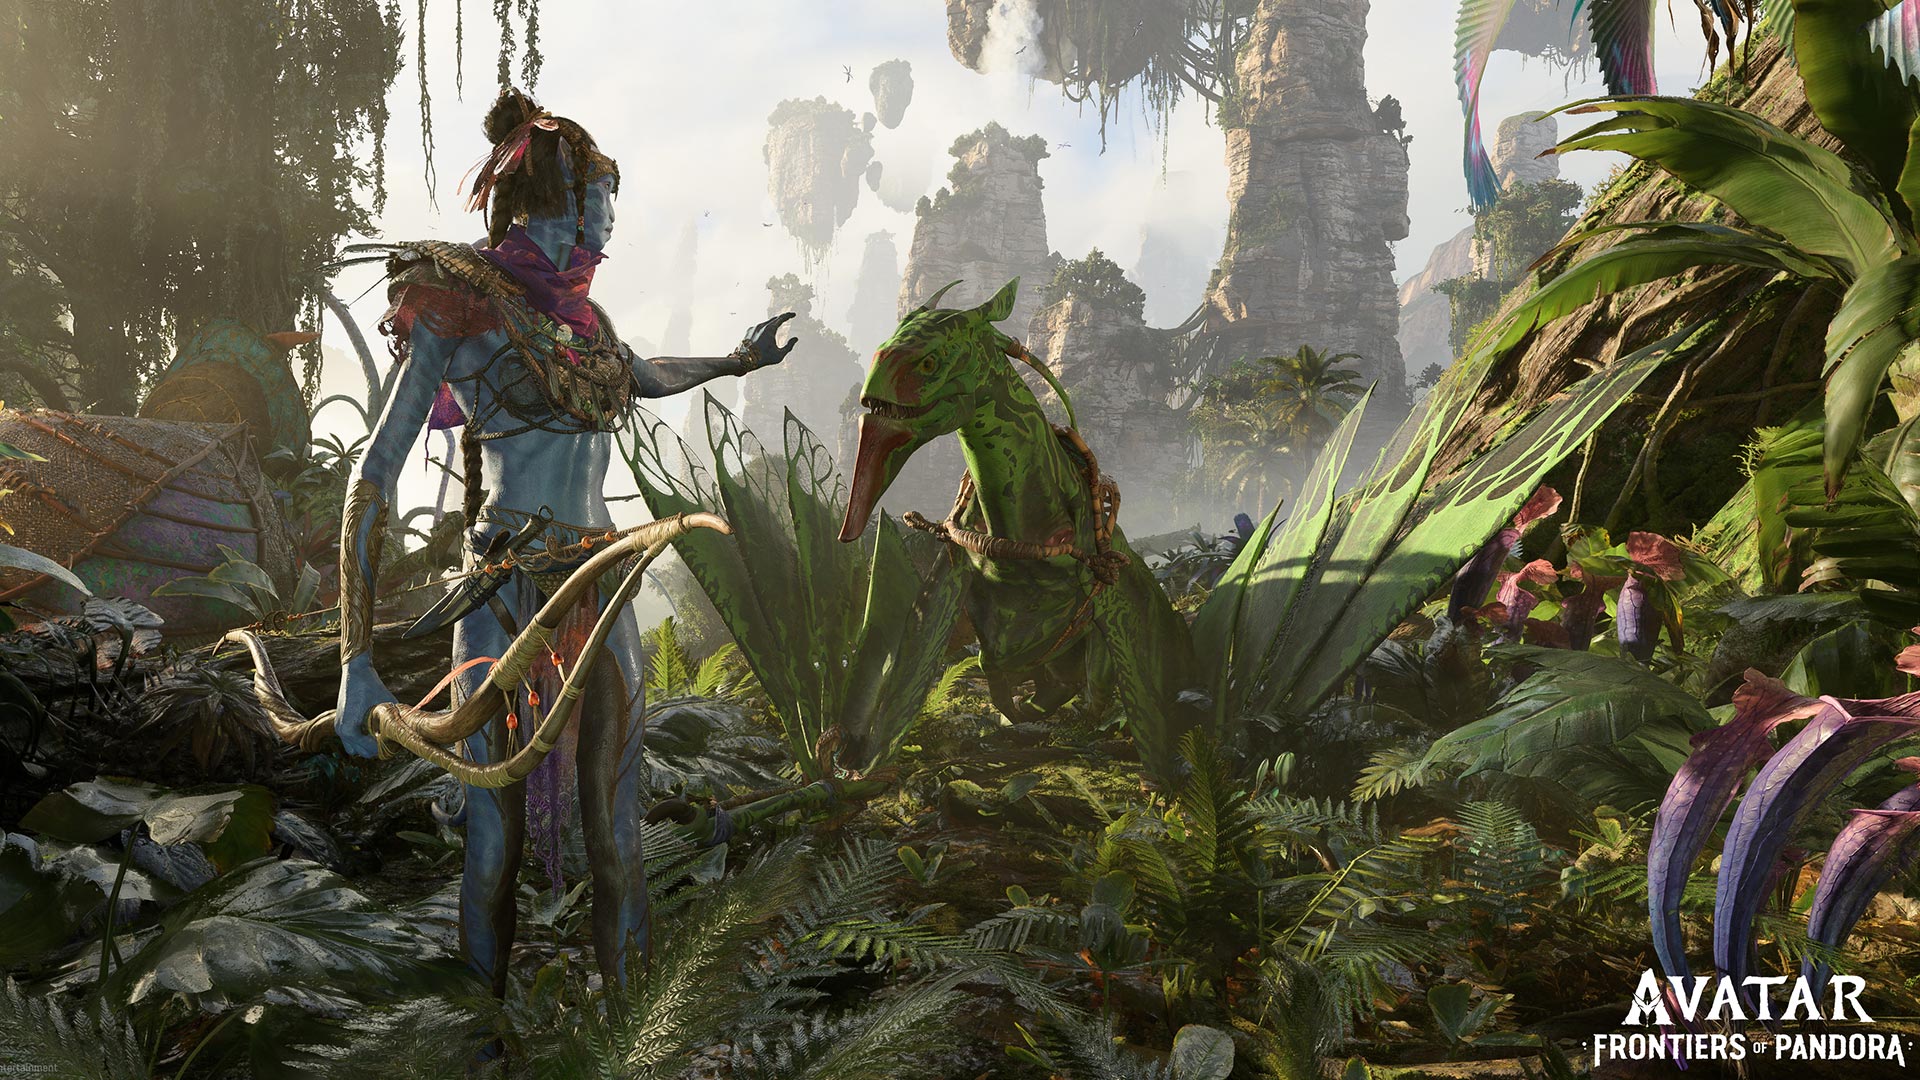 Game bắn súng MMORPG lấy phim Avatar làm chủ đề sắp ra mắt trong năm nay